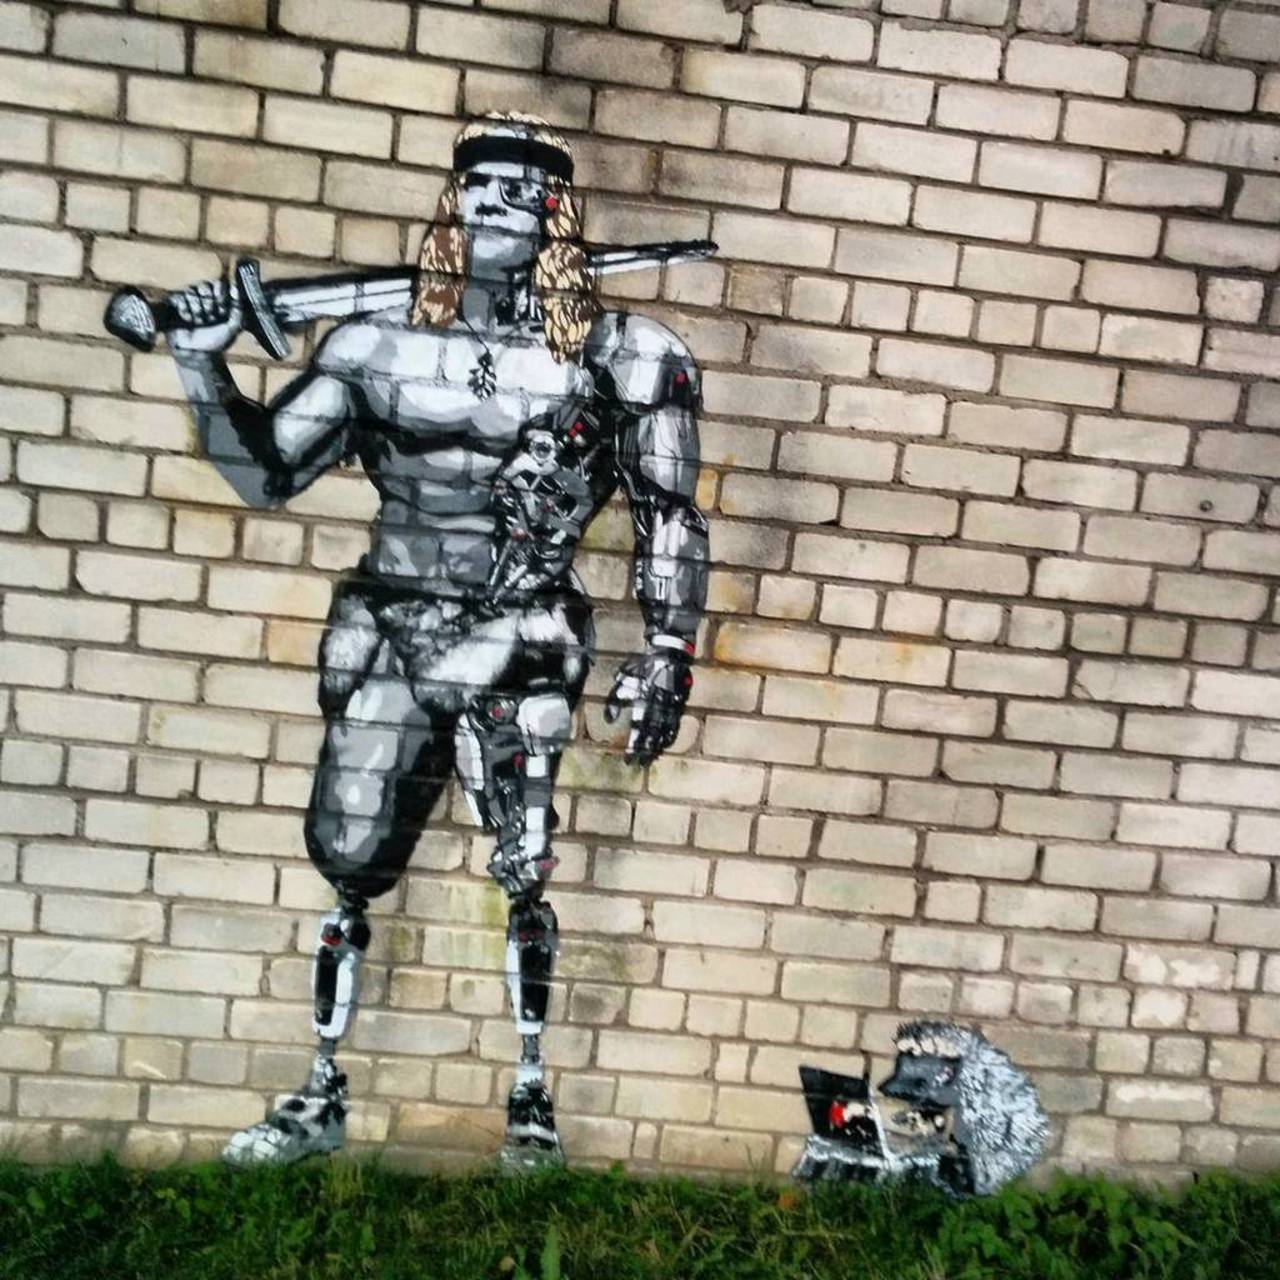 #graffitiart #graffiti #robot #art #graffitiporn #tallinn #estonia #balticsea #streetart #streetphotography #roboth… http://t.co/wZAGsi0Ql7